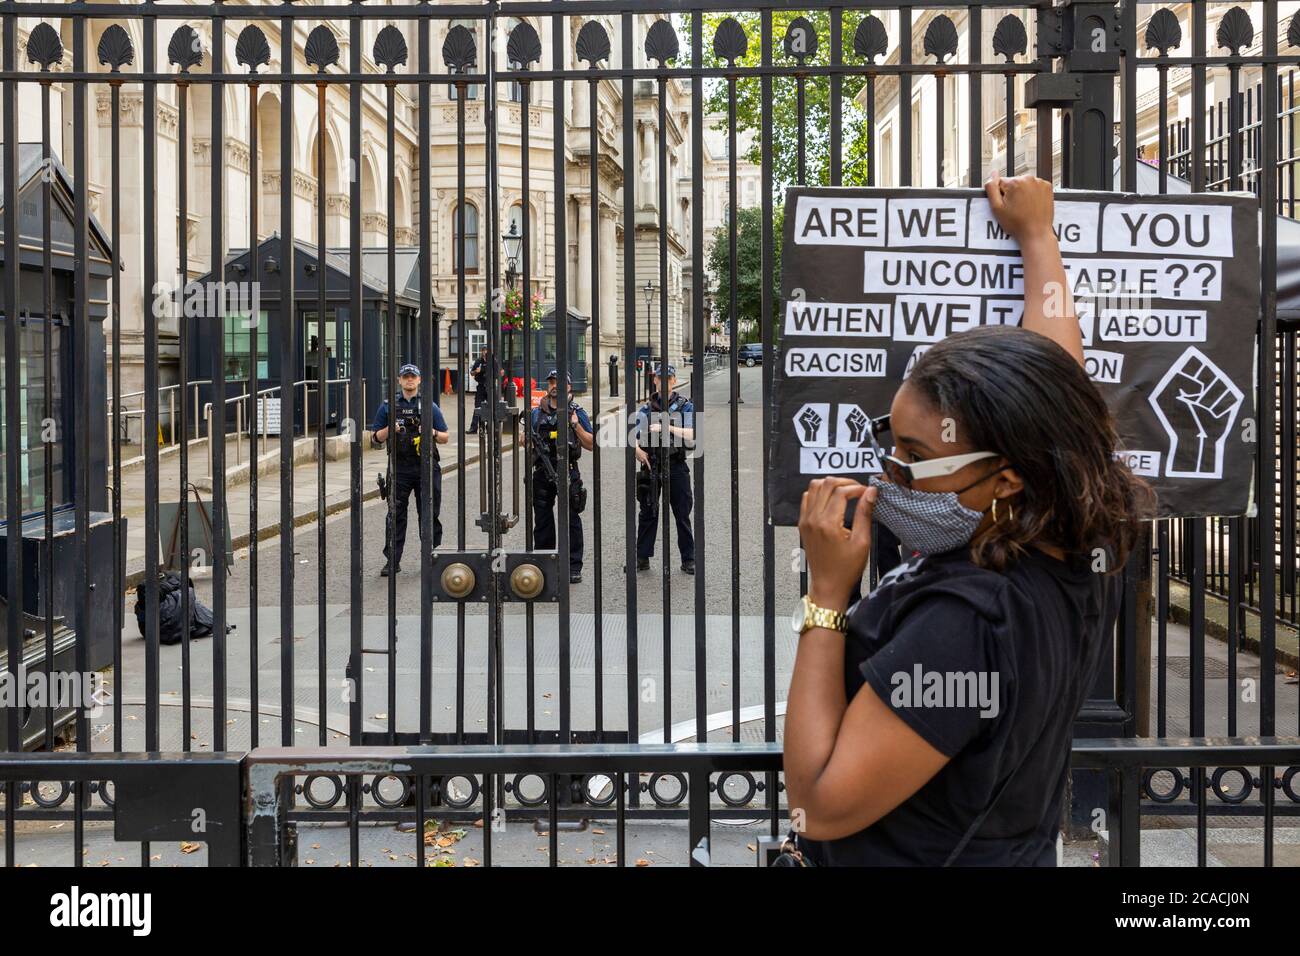 Un manifestant affronte la police à l'extérieur du 10 Downing Street, Black Lives Matter manifestation, Londres, 2 août 2020 Banque D'Images